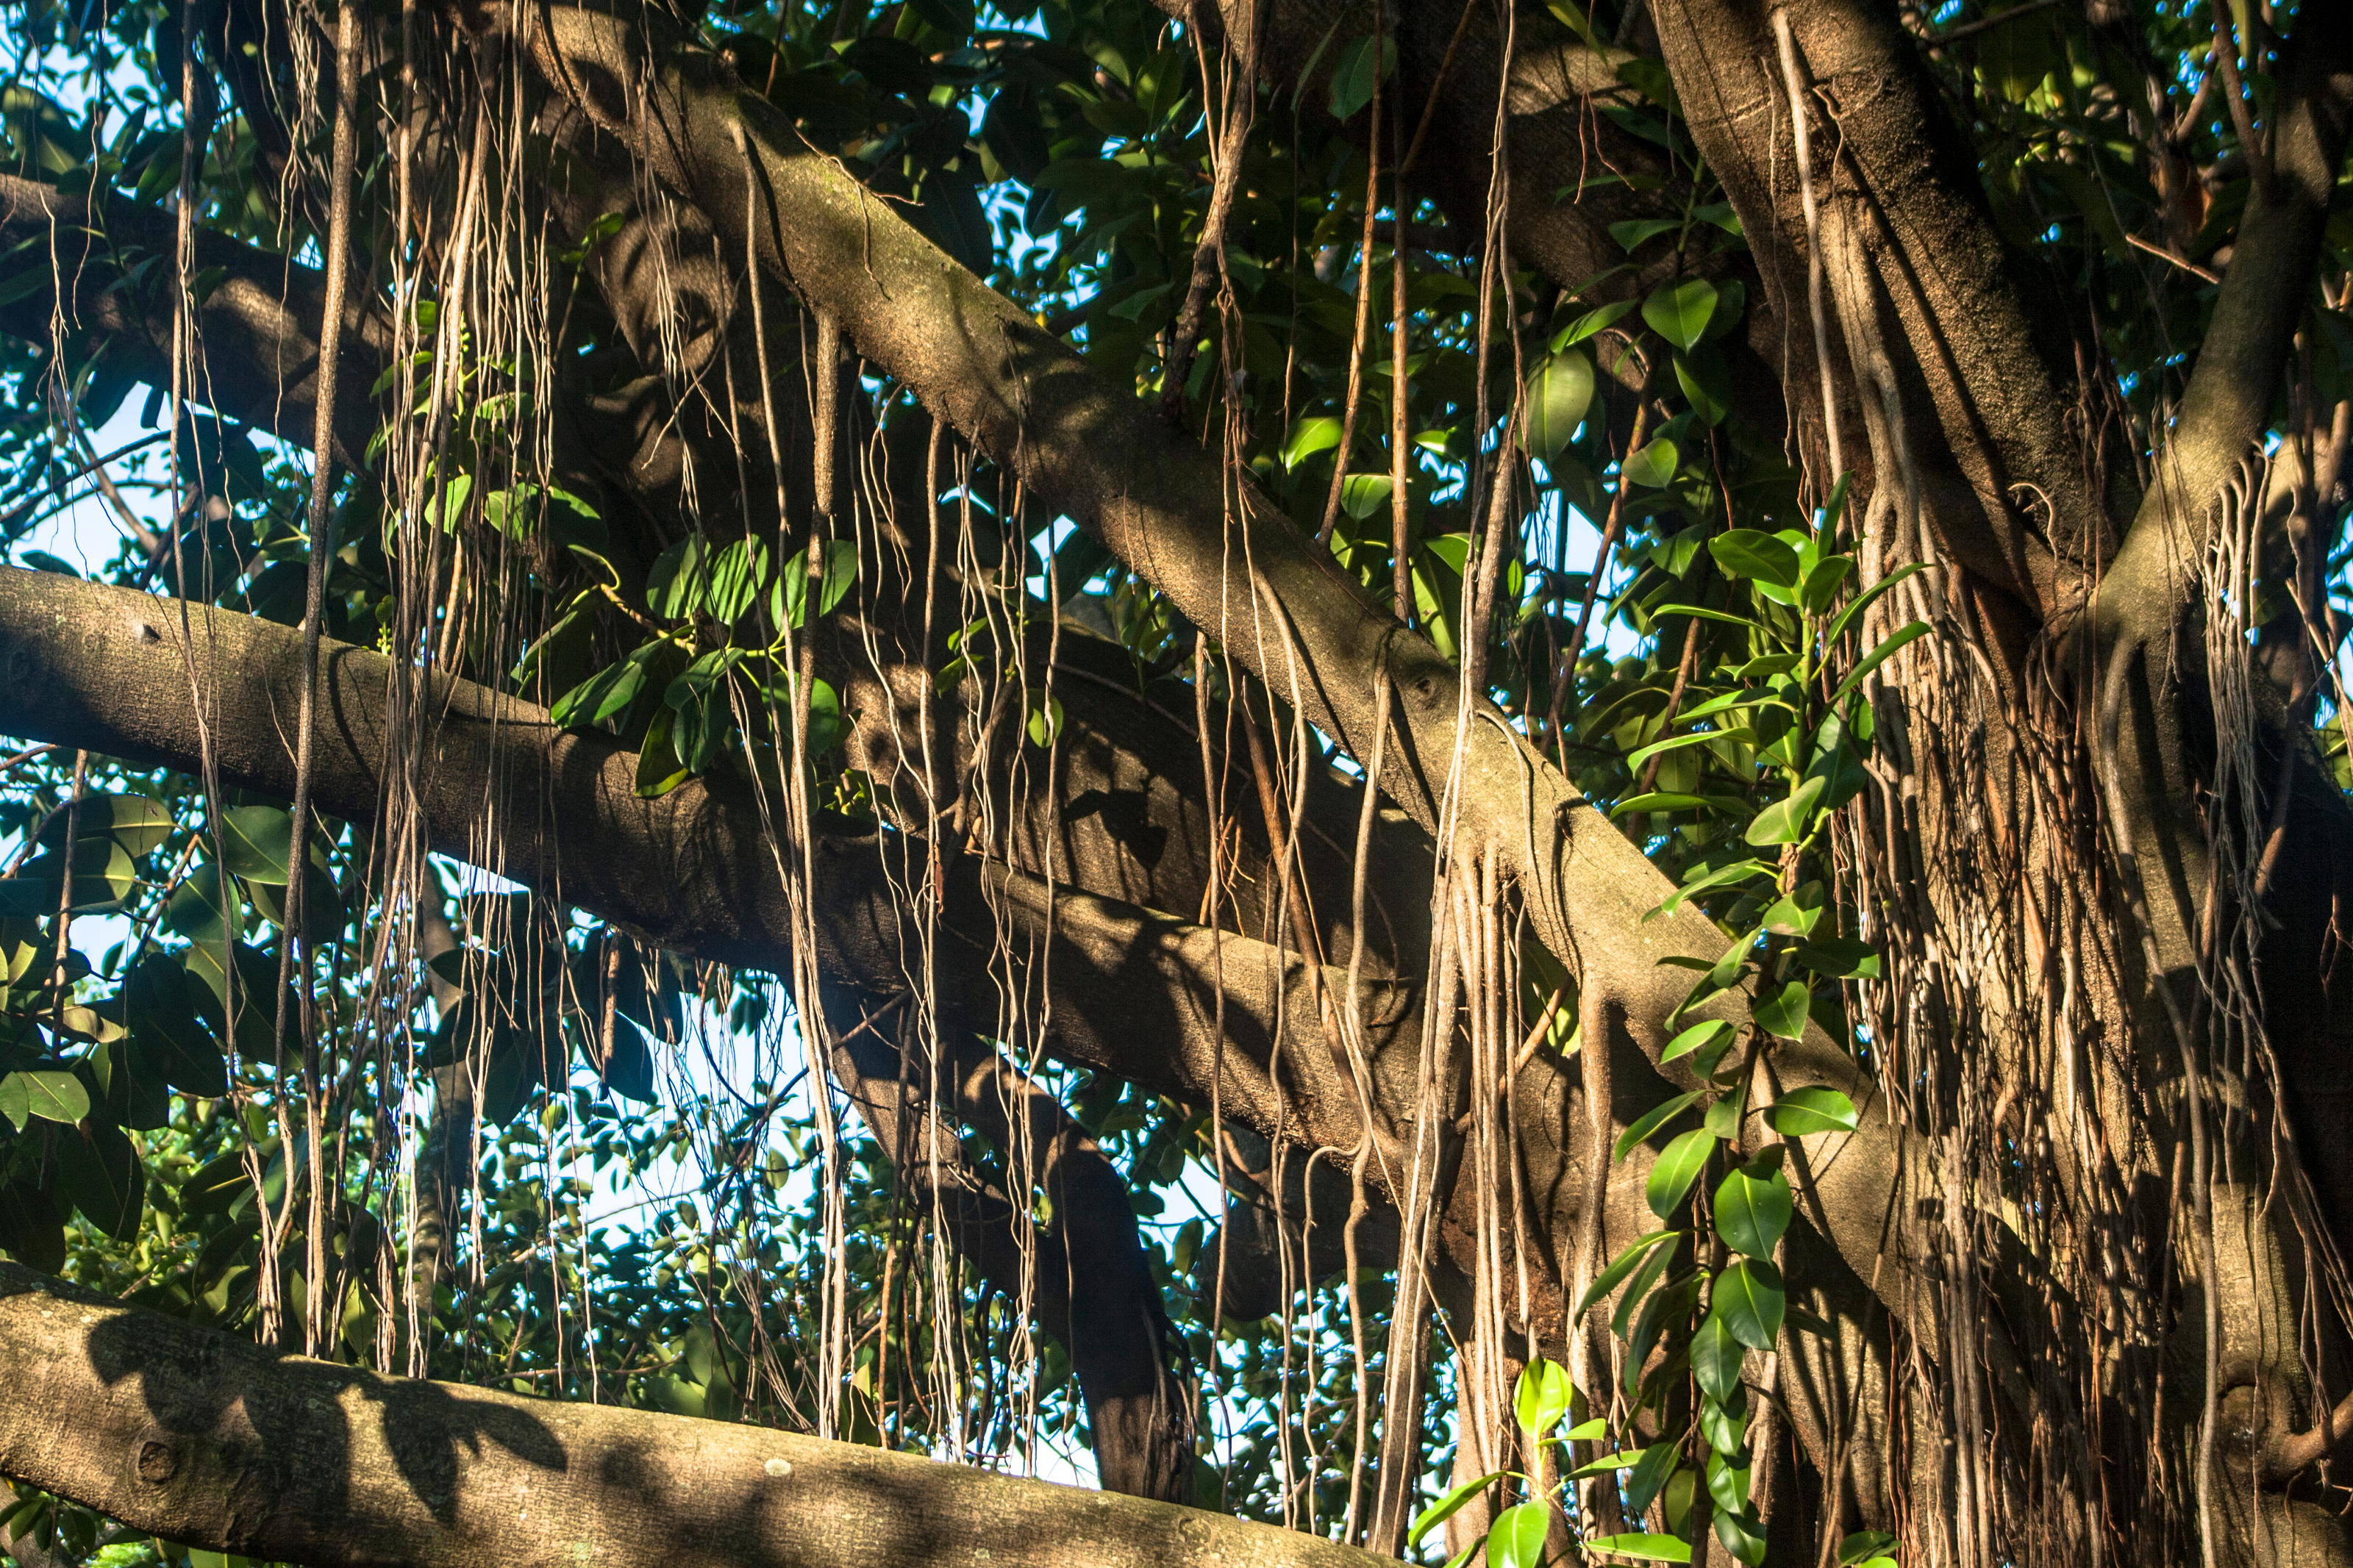 Каучук из фикуса. Фикусы из тропических лесов великаны с воздушными корнями. Мост из каучукового фикуса.